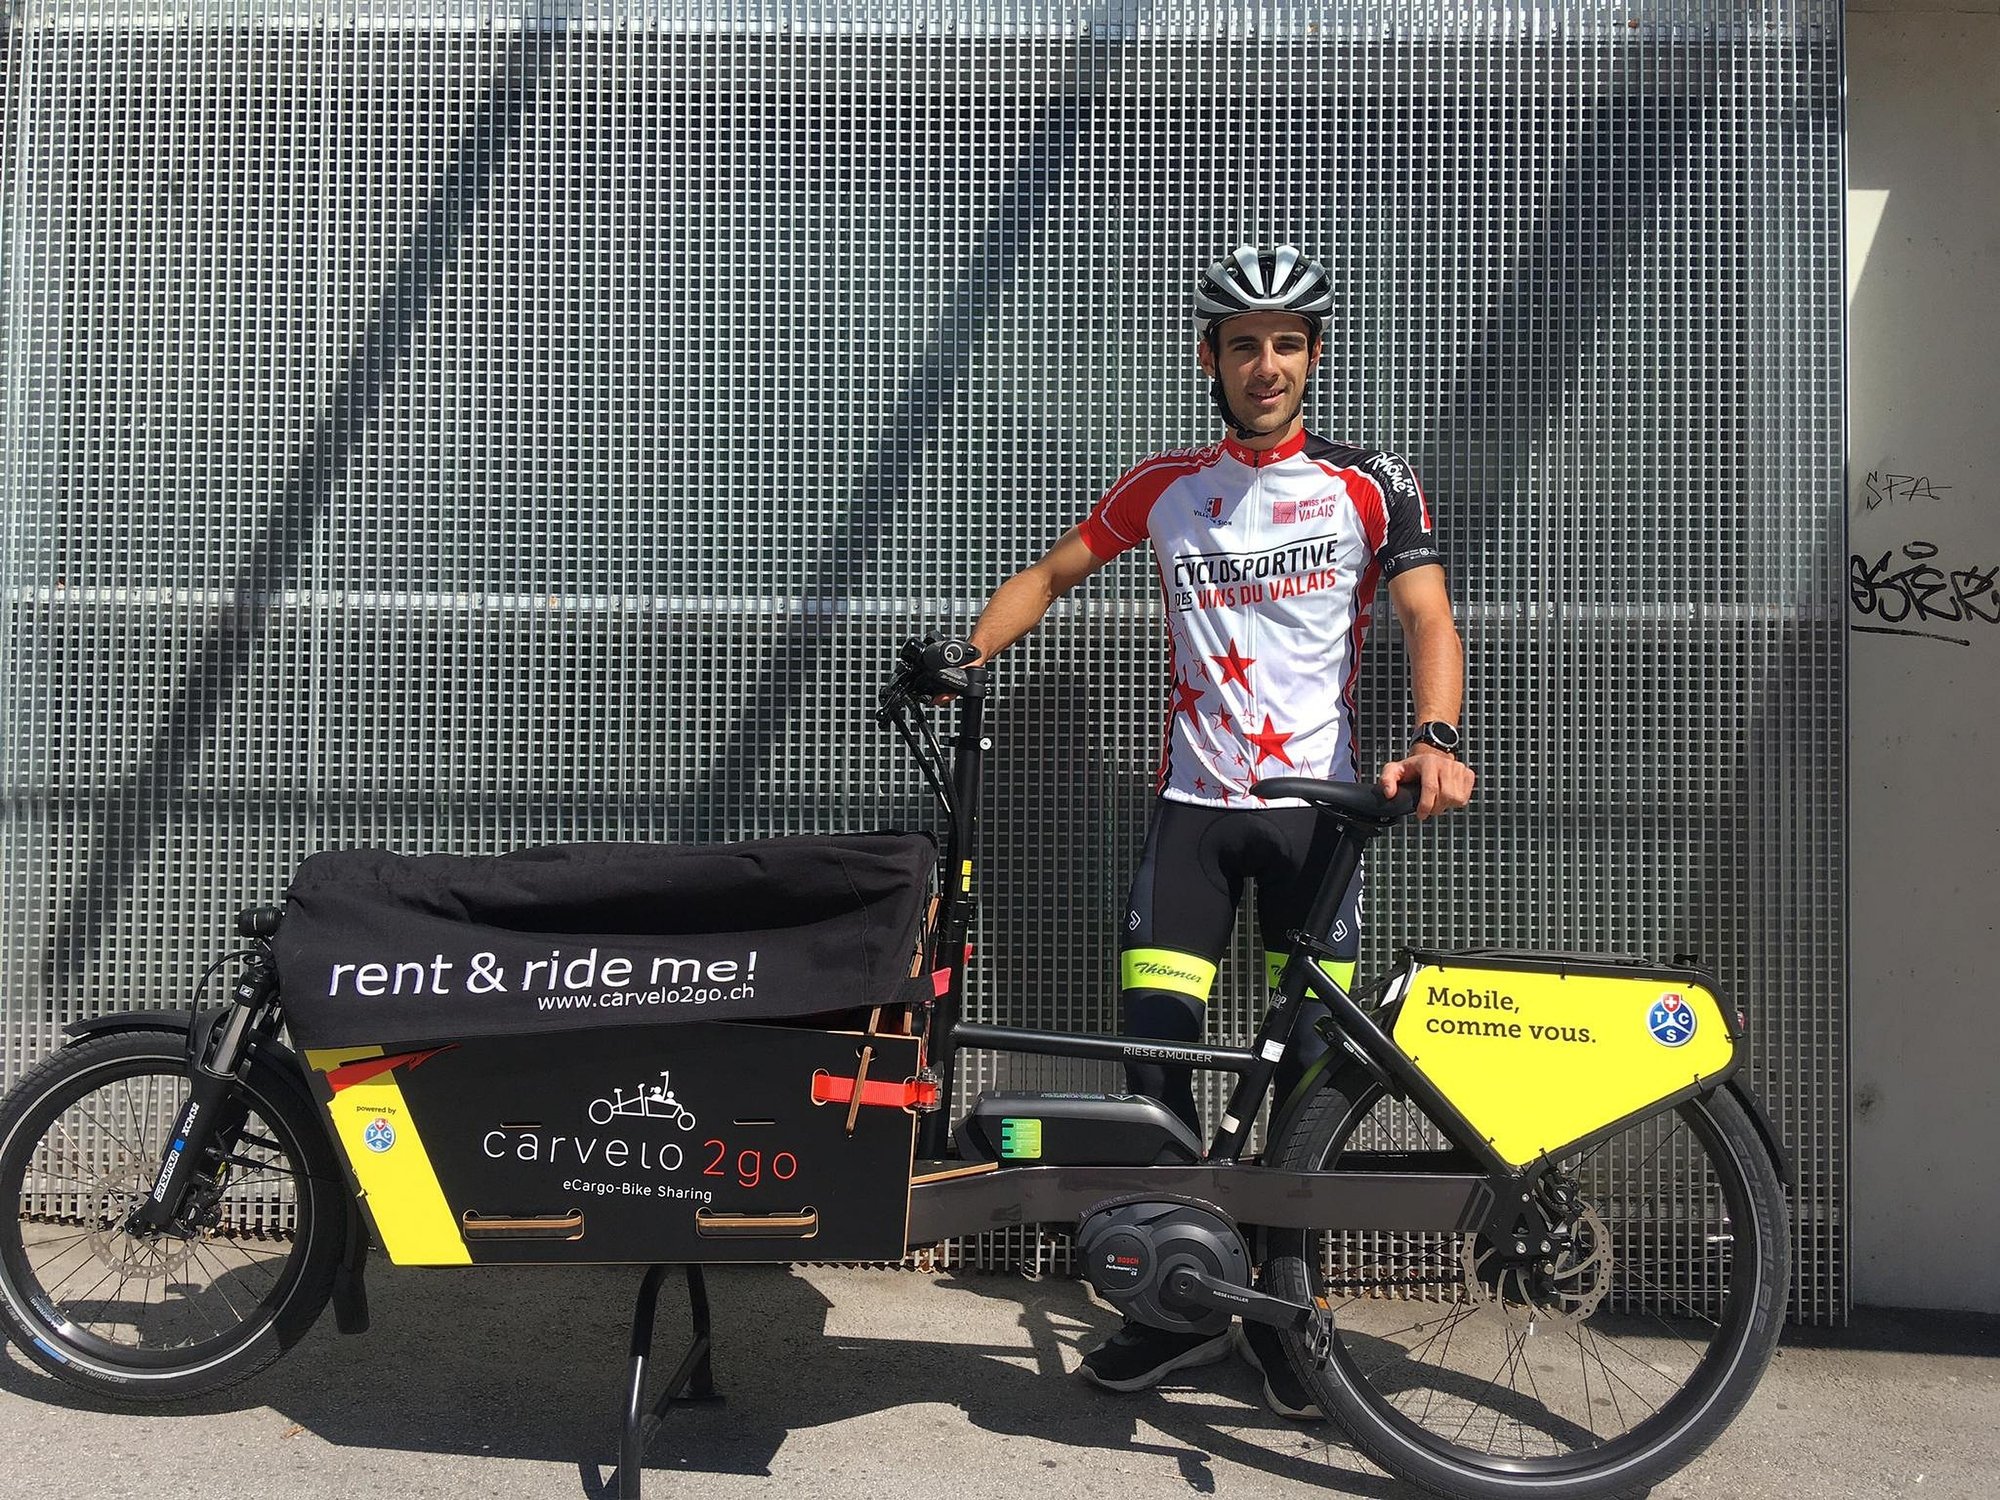 Antoine Debons enfile son t-shirt de la Cyclosportive des vins du Valais quand il effectue ses livraisons. Dès mardi, son vélo sera aussi décoré aux couleurs de l'épreuve.